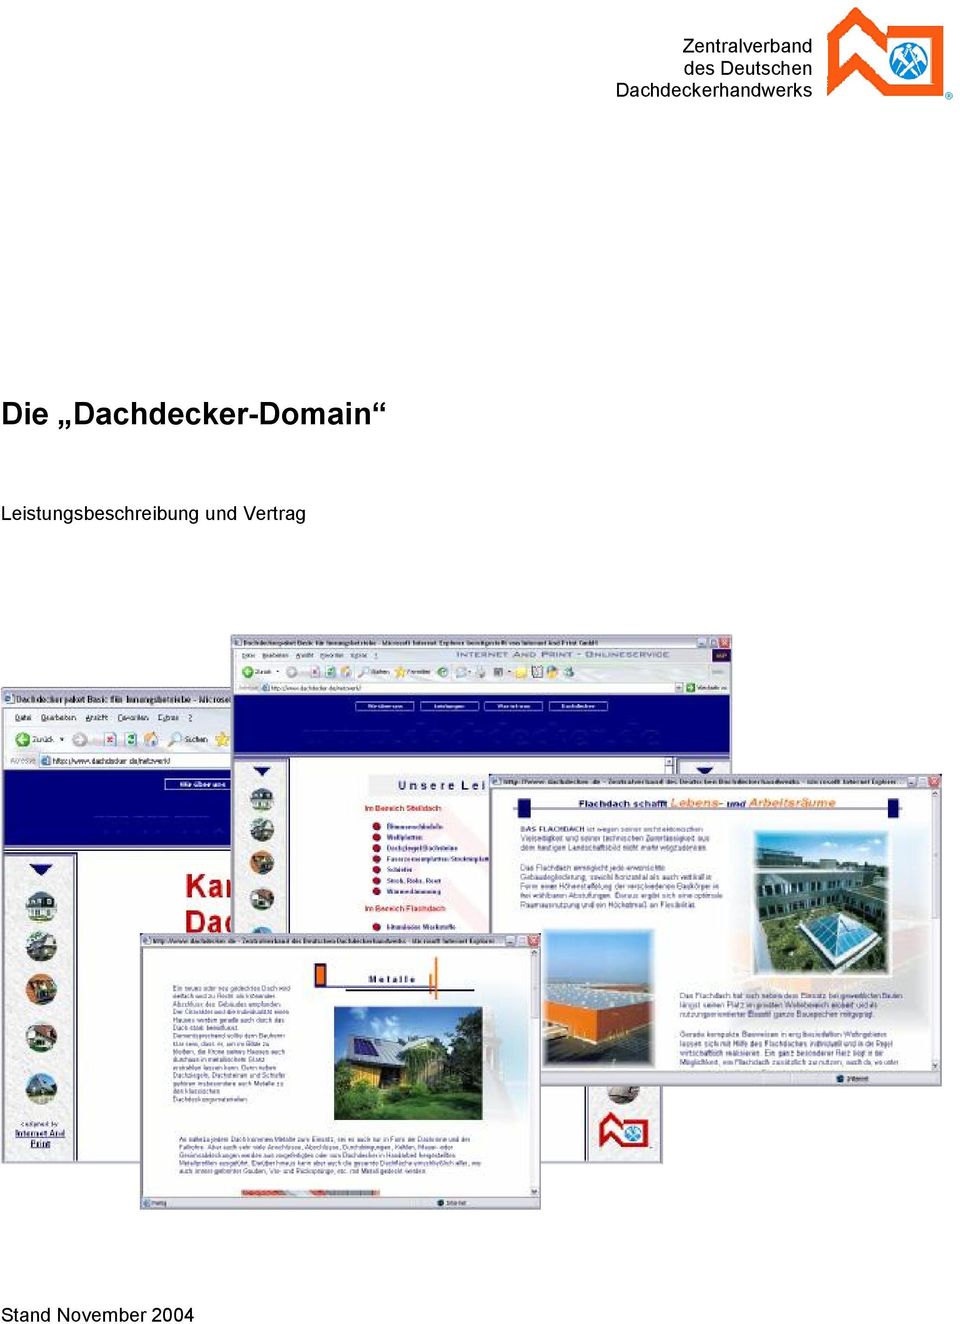 Dachdecker-Domain